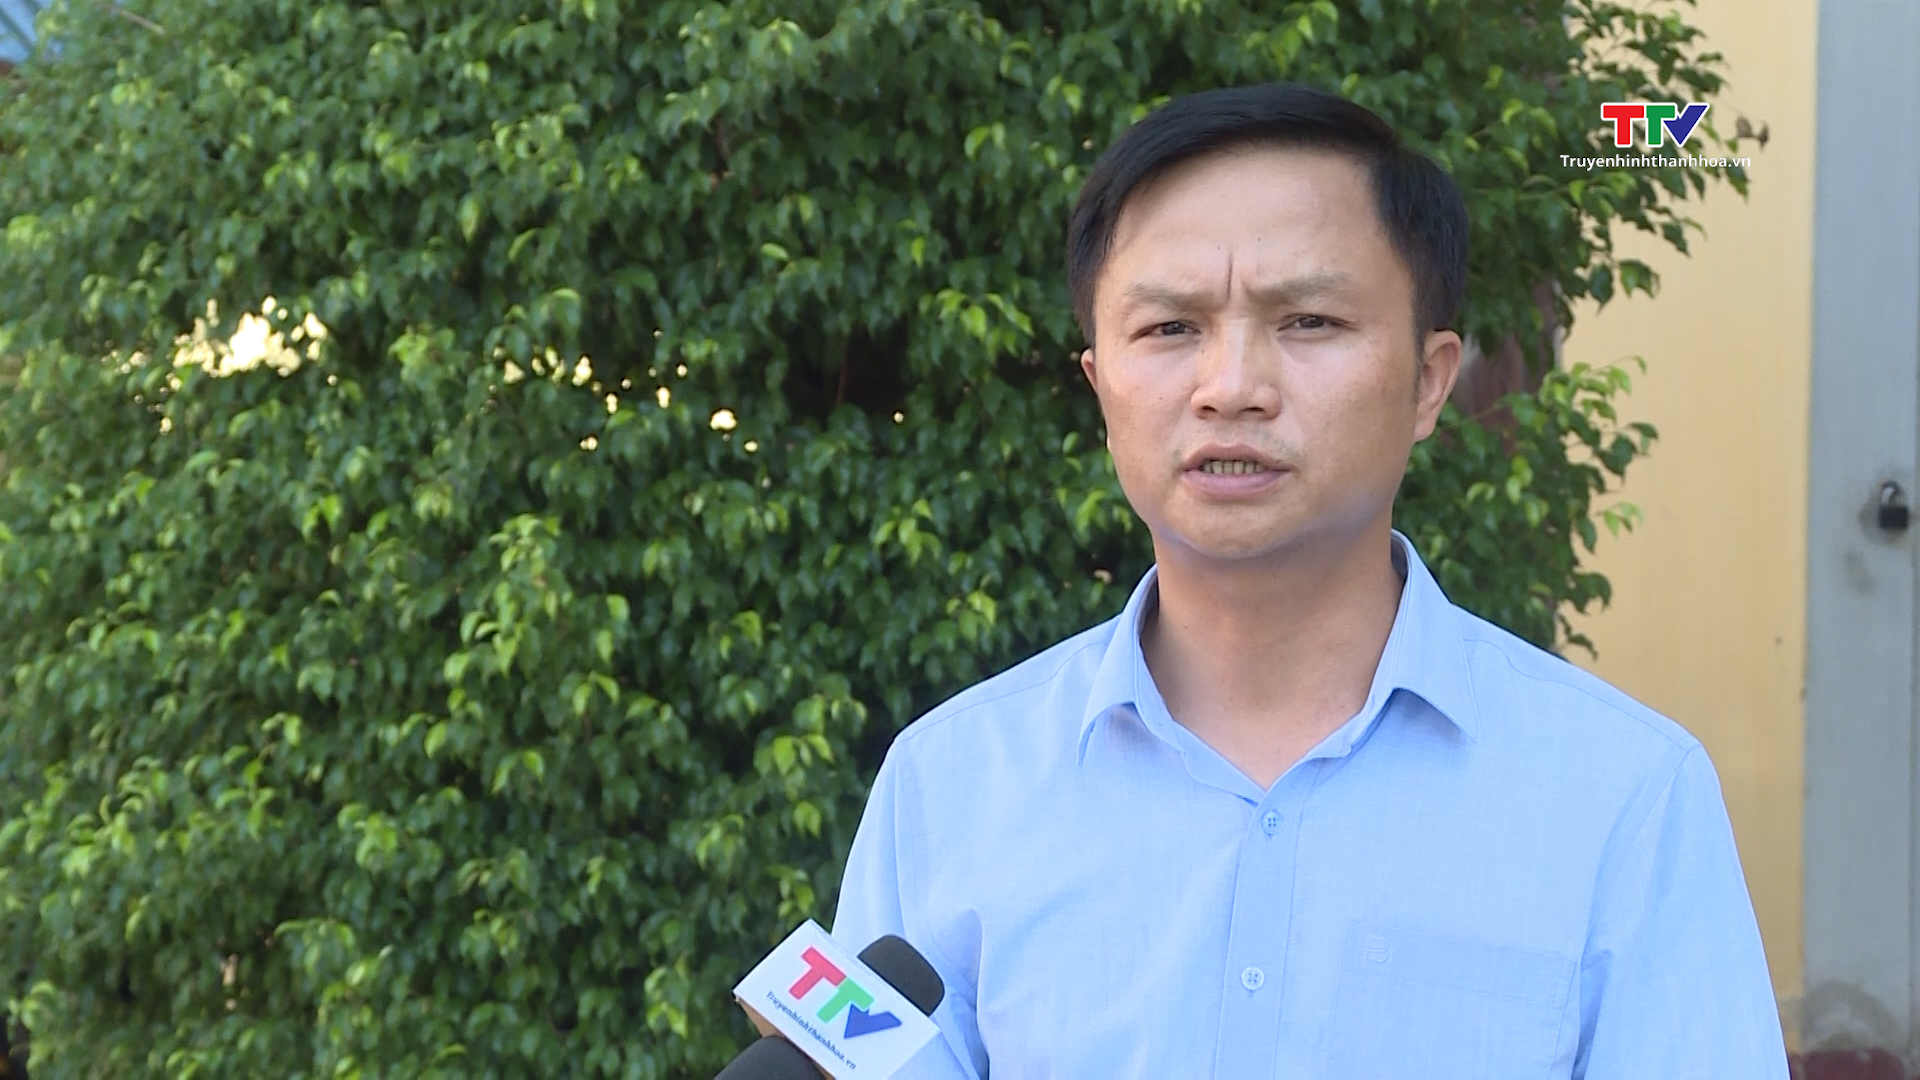 Hàng ngàn hộ dân ở huyện Thọ Xuân thiếu nước sạch để sinh hoạt  - Ảnh 5.